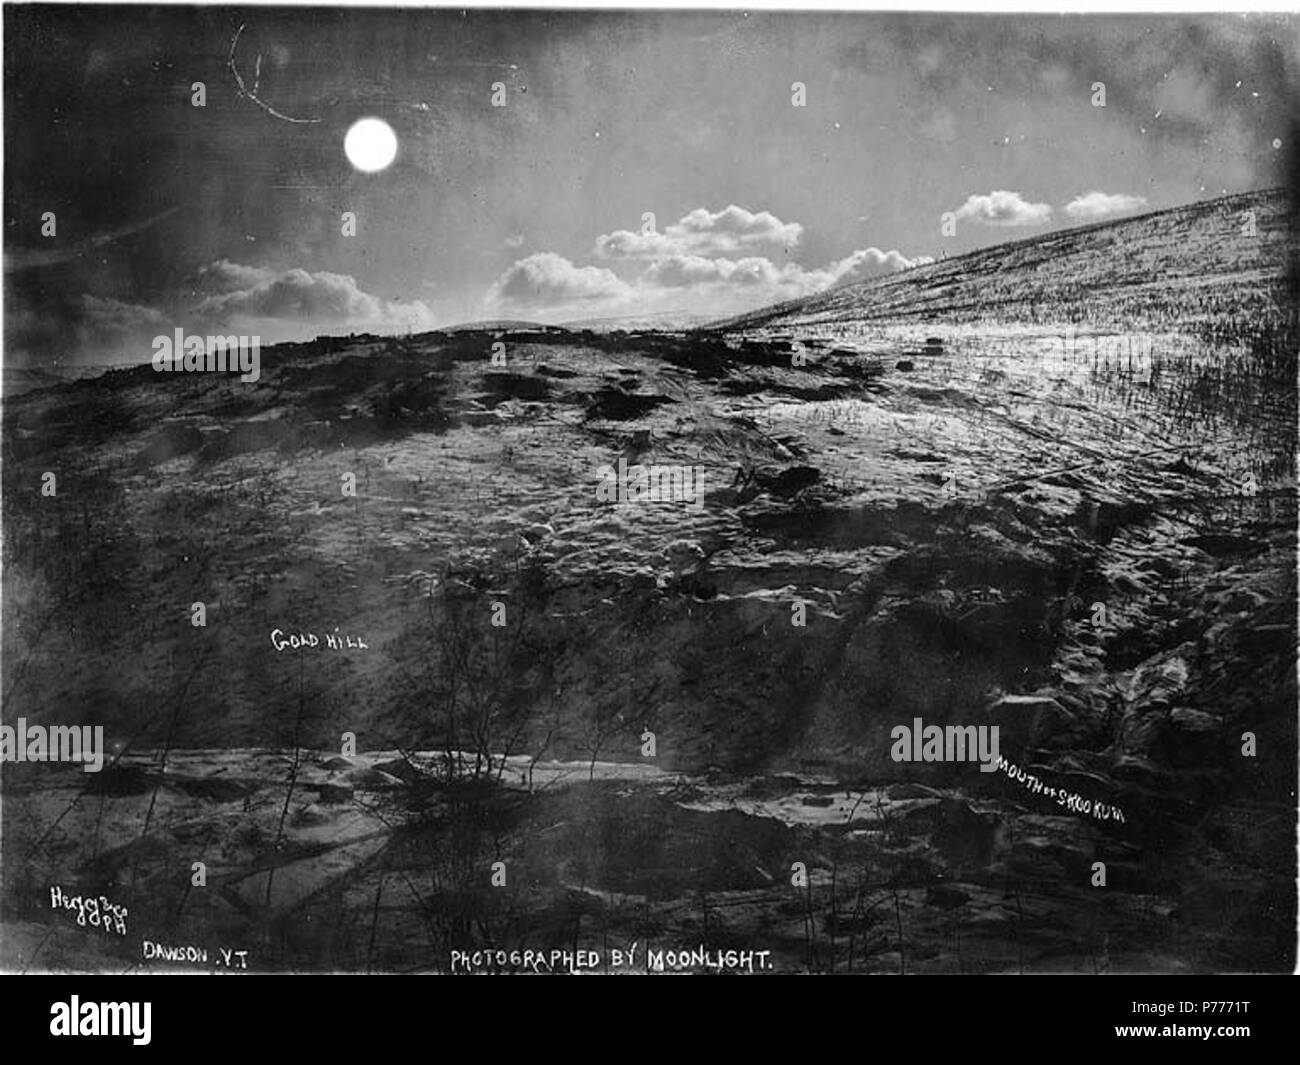 . Englisch: Gold Hill und Mund von skookum Creek von Moonlight fotografiert, Yukon Territory, Ca. 1898. Englisch: Legende zum Bild: 'Gold Hill, Mund von Skookum bei Mondschein fotografiert." Themen (LCTGM): Berge - Yukon; Skookum Creek (Yukon); Streams-- Yukon Themen (LCSH): Gold Hill (Yukon). ca. 1898 5 Gold Hill und Mund von skookum Creek fotografiert von Moonlight, Yukon Territory, ca 1898 HEGG (354) Stockfoto